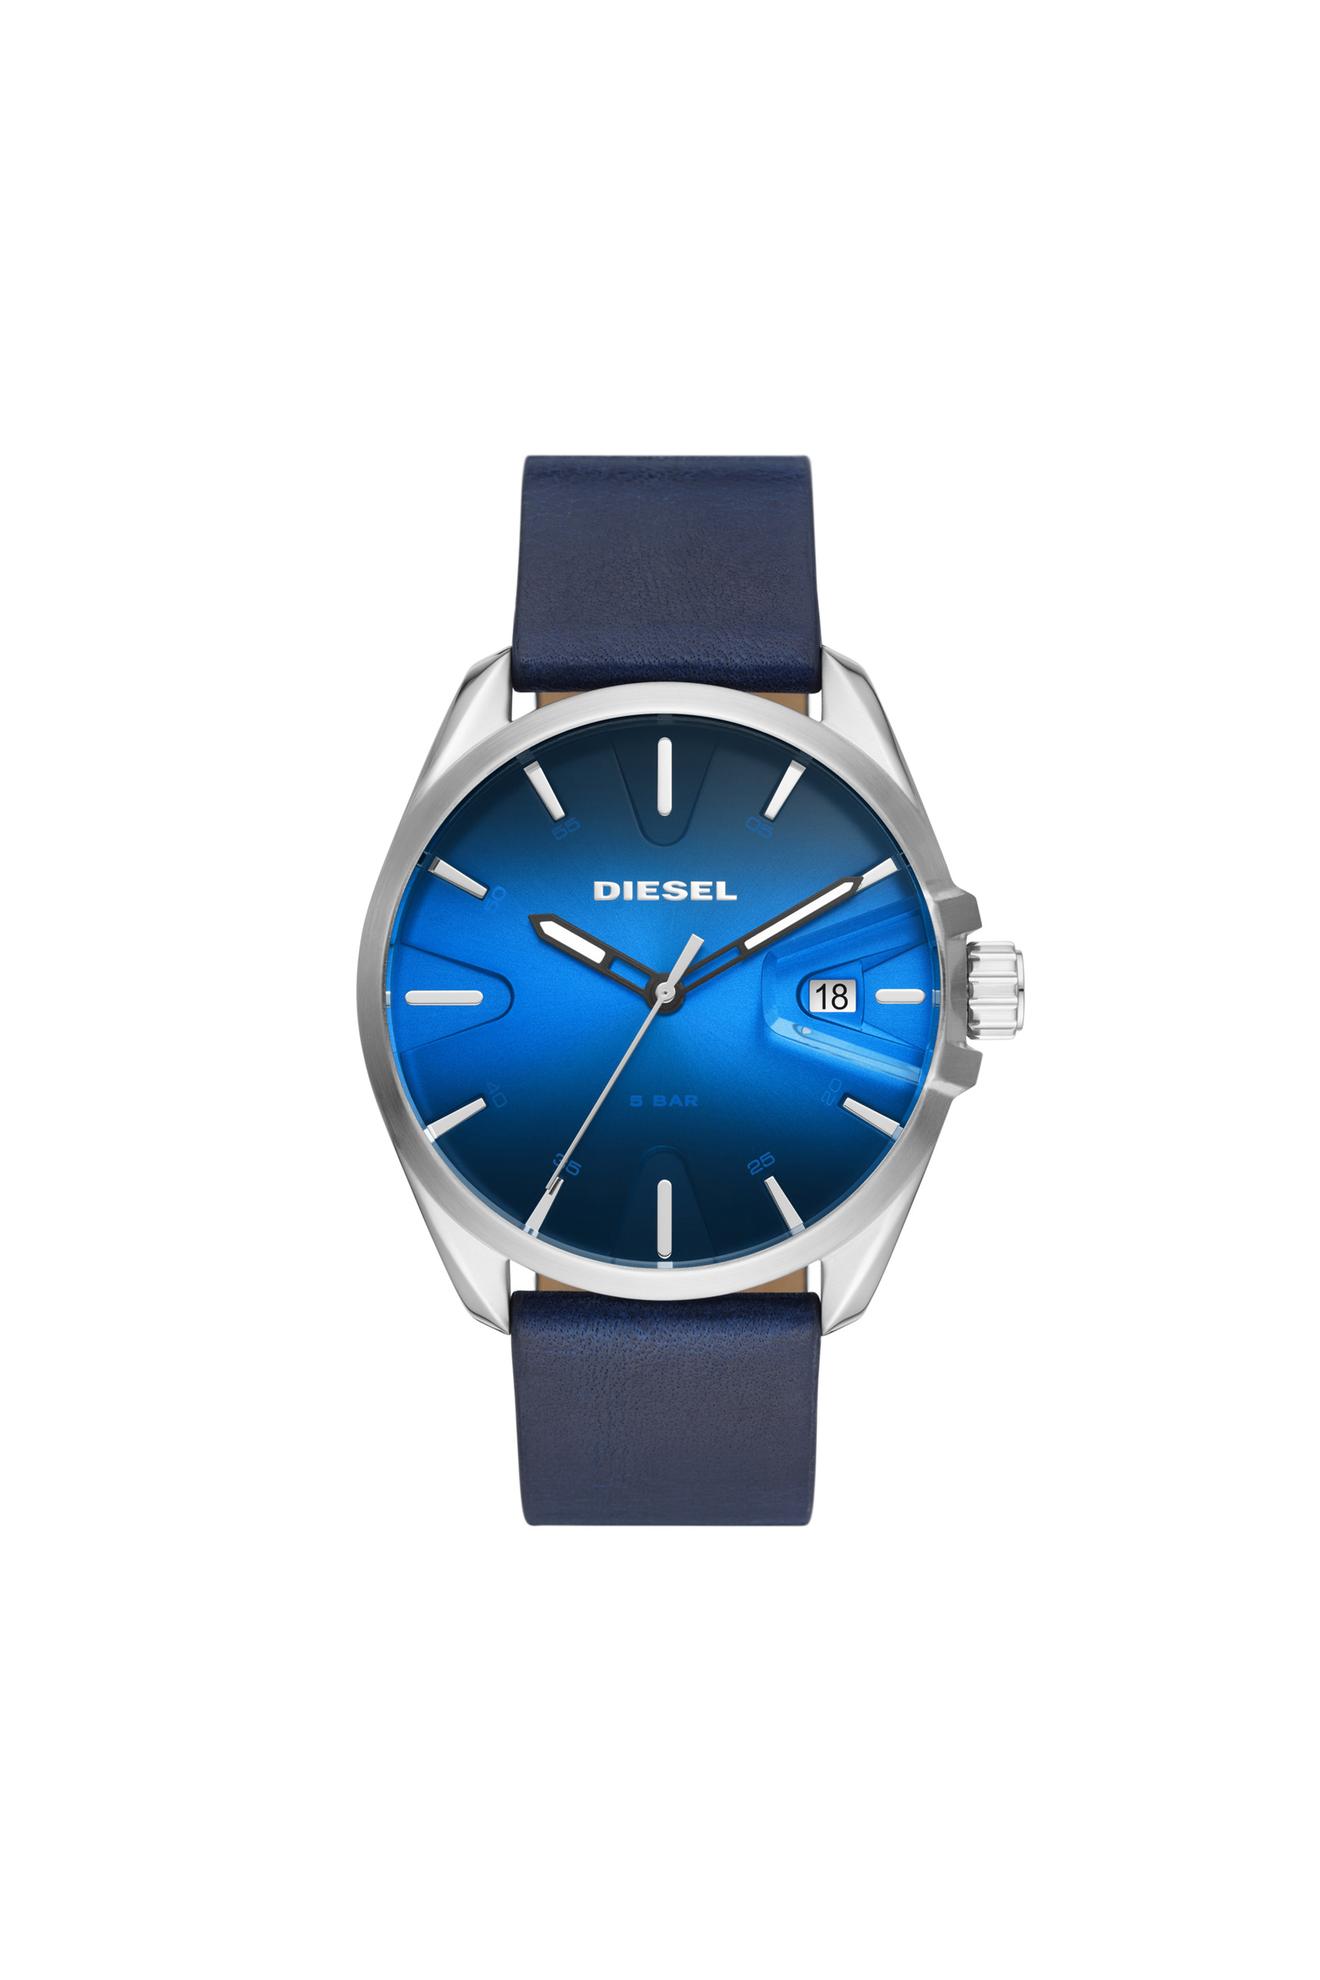 Oferta de Reloj MS9 de cuero azul con fecha de tres agujas por 114€ en Diesel